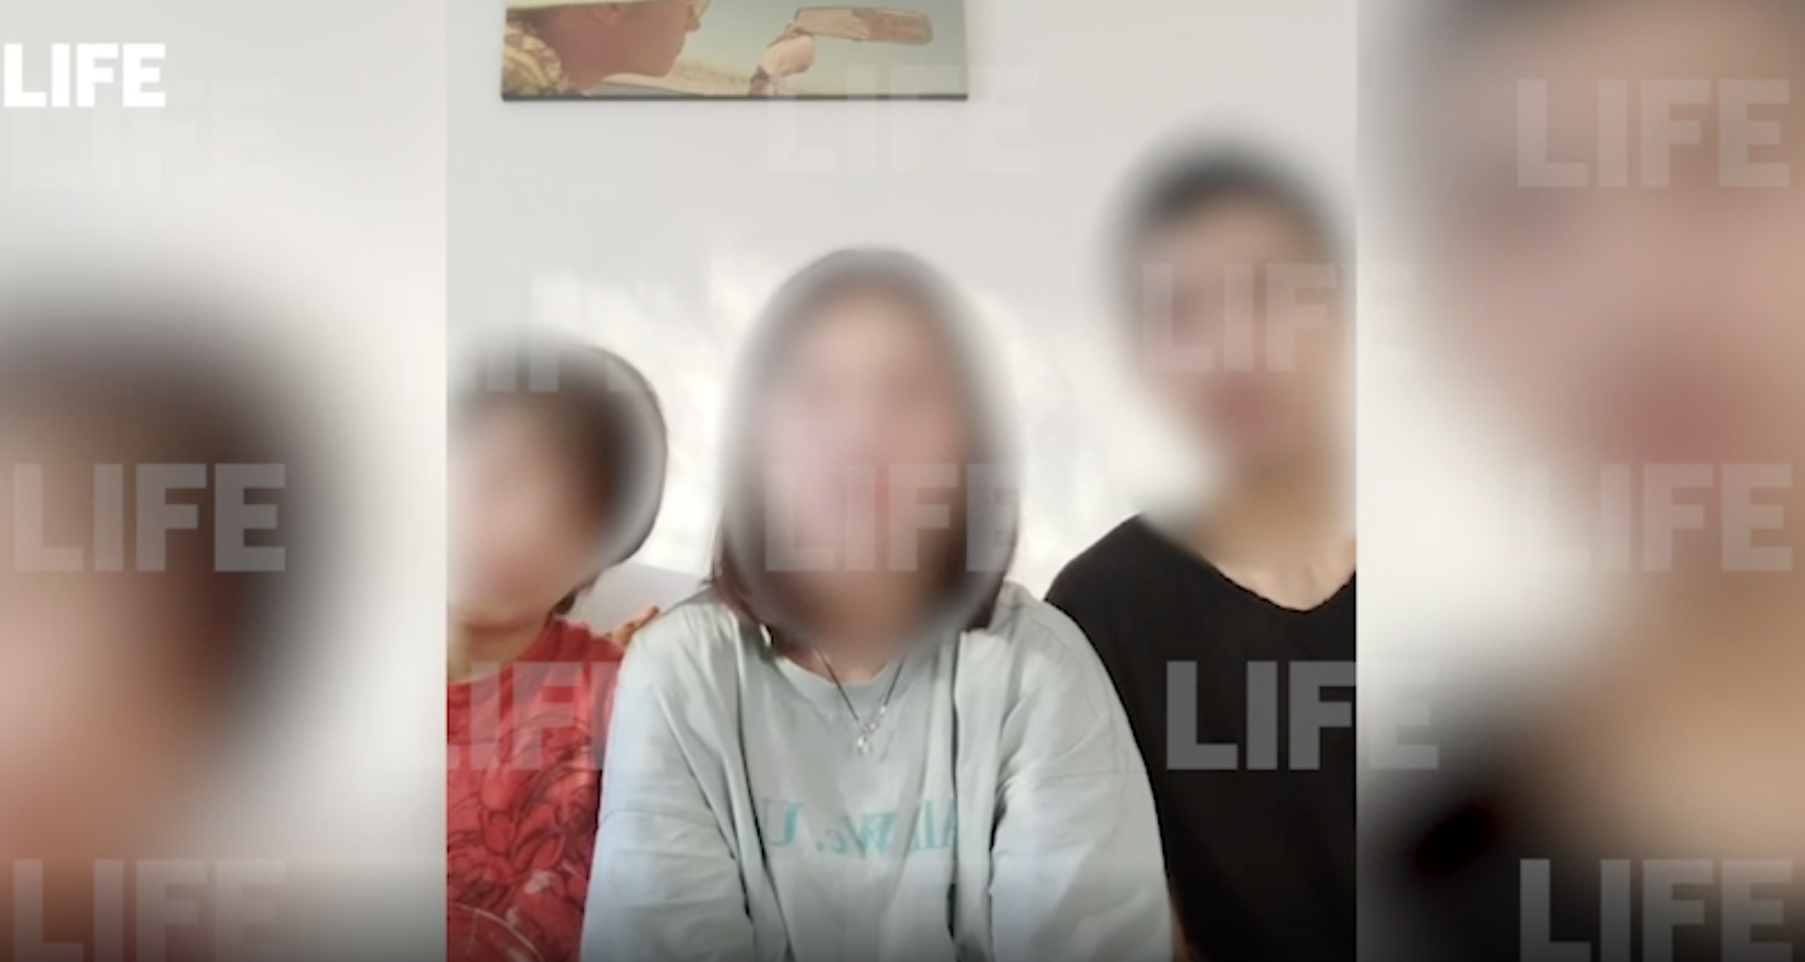 Лайф публикует видеообращение 3 детей, которые забаррикадировались в квартире в Калининграде